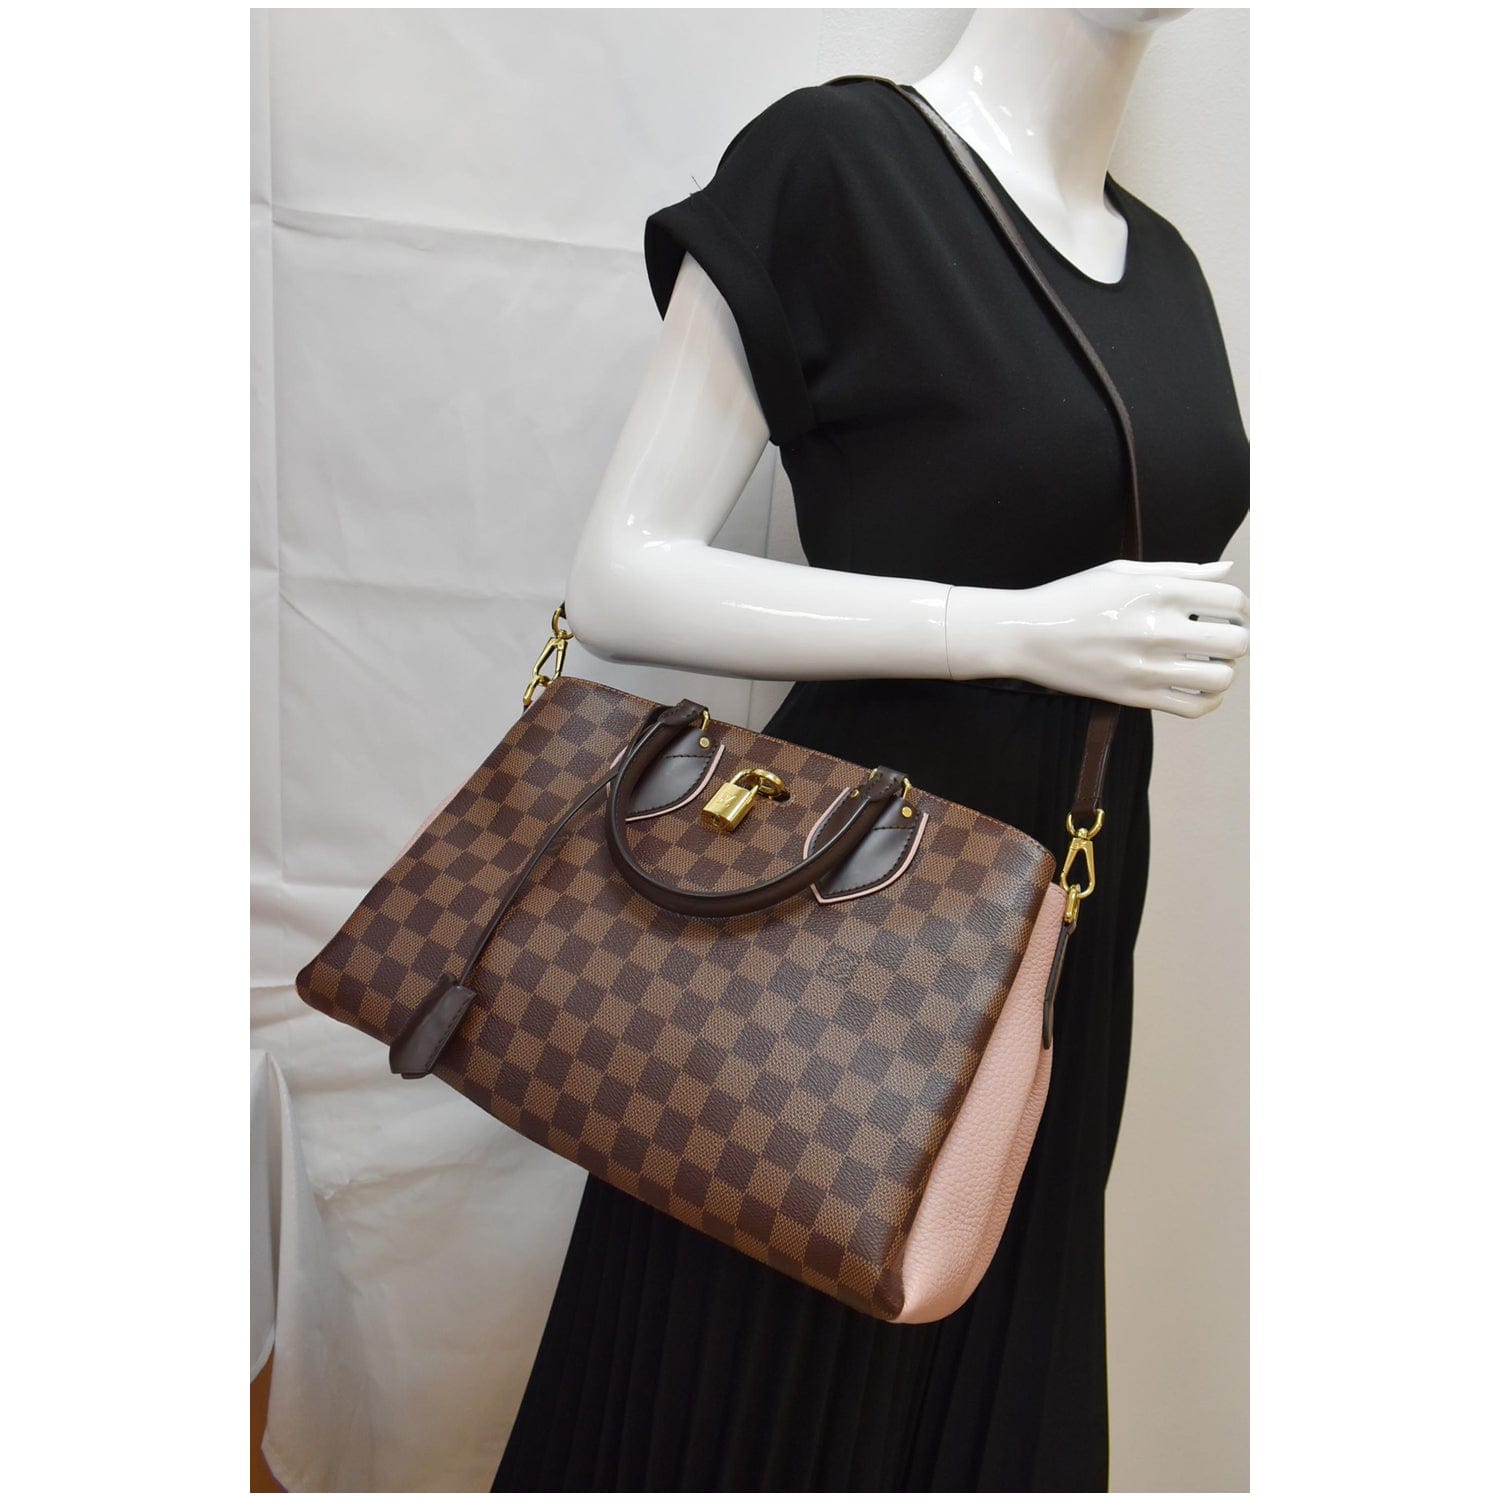 Authentic Louis Vuitton Normandy Damier Ebene shoulder bag